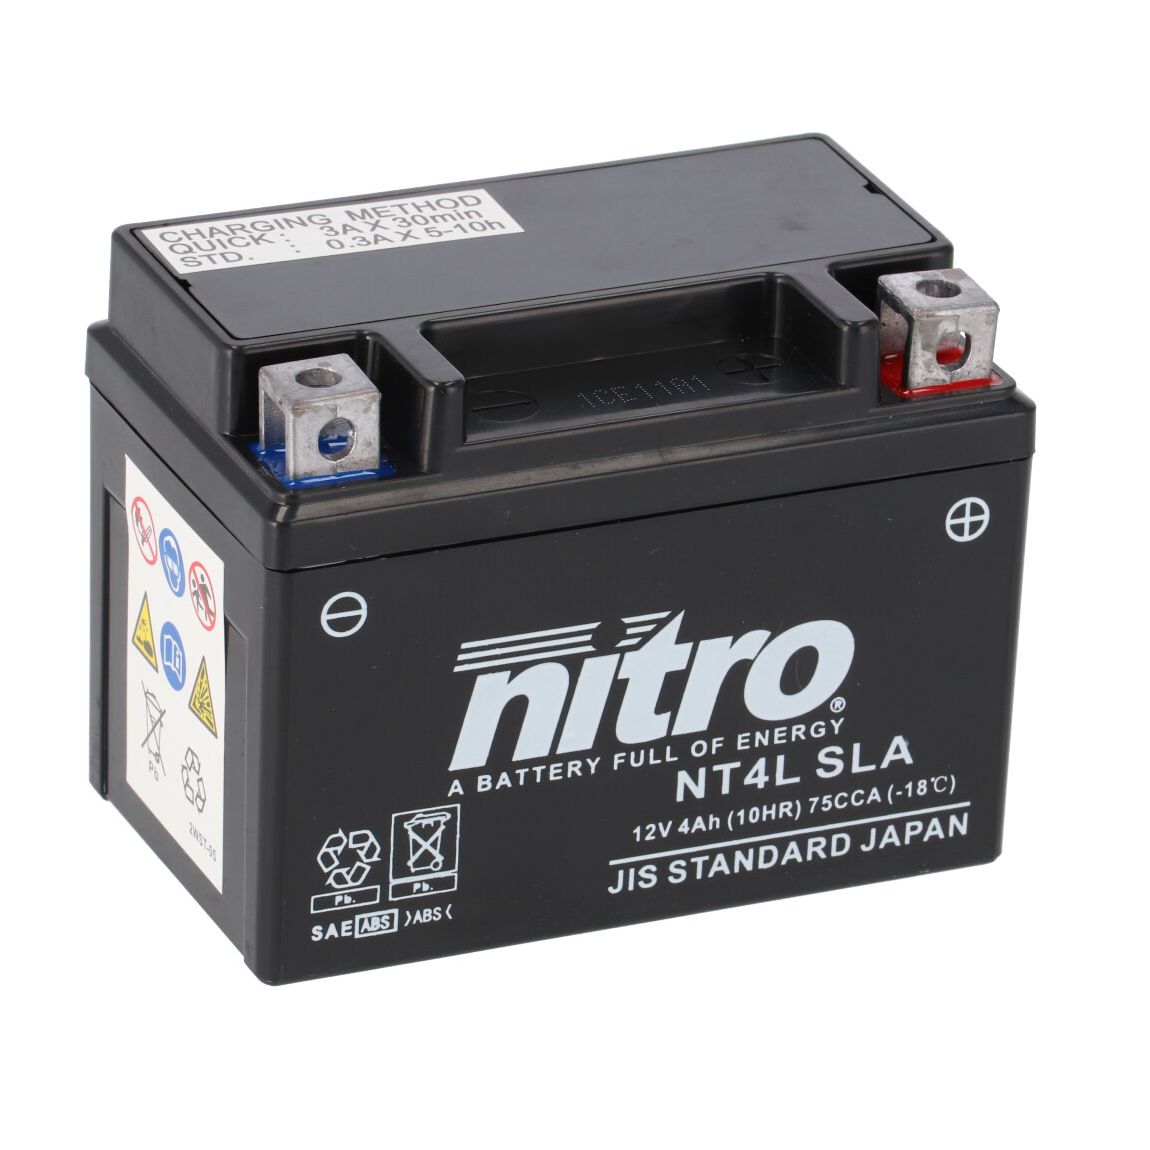 Batterie Nitro NT4L SLA FERME TYPE ACIDE SANS ENTRETIEN/PRÊTE À L'EMPLOI